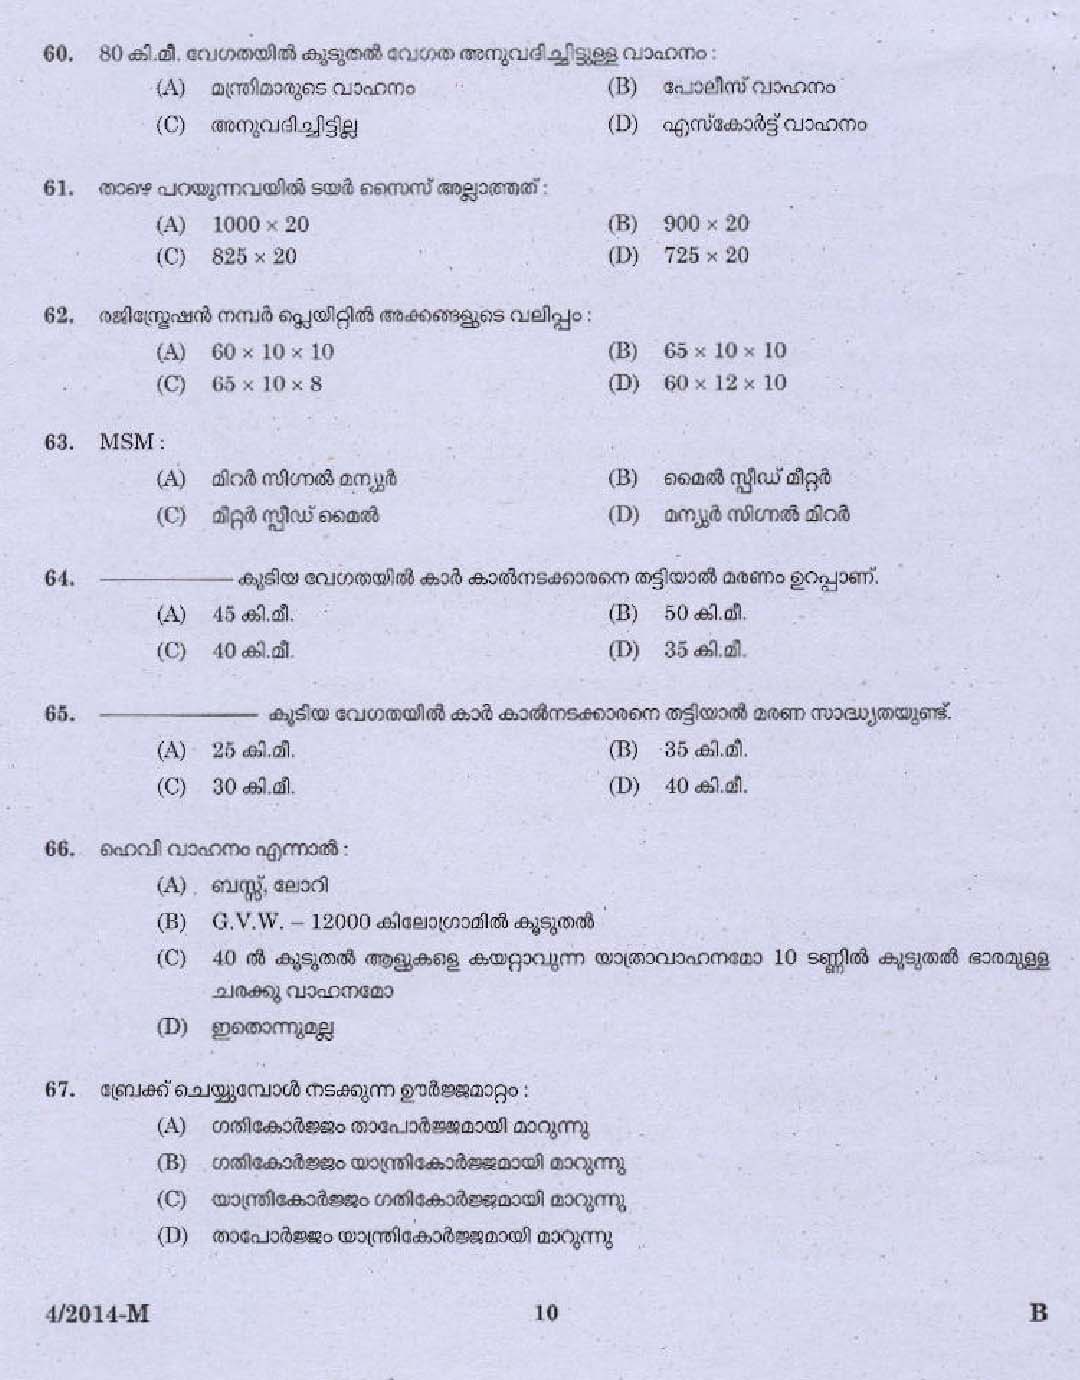 Kerala PSC Driver Grade II Exam 2014 Question Paper Code 042014 M 8